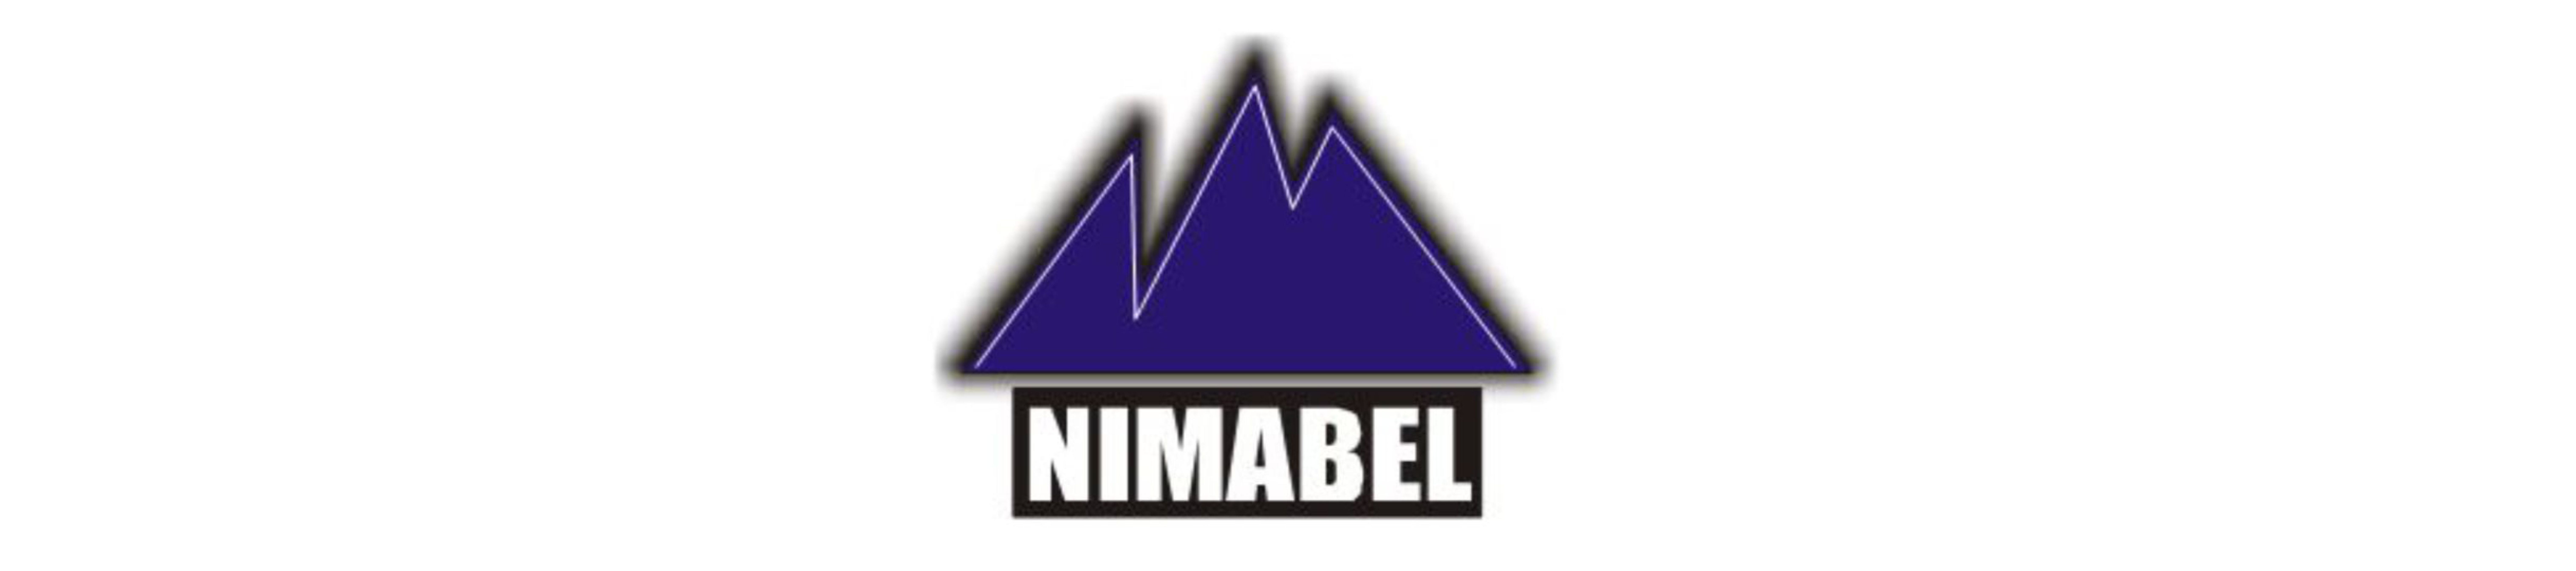 NIMABEL Ventures